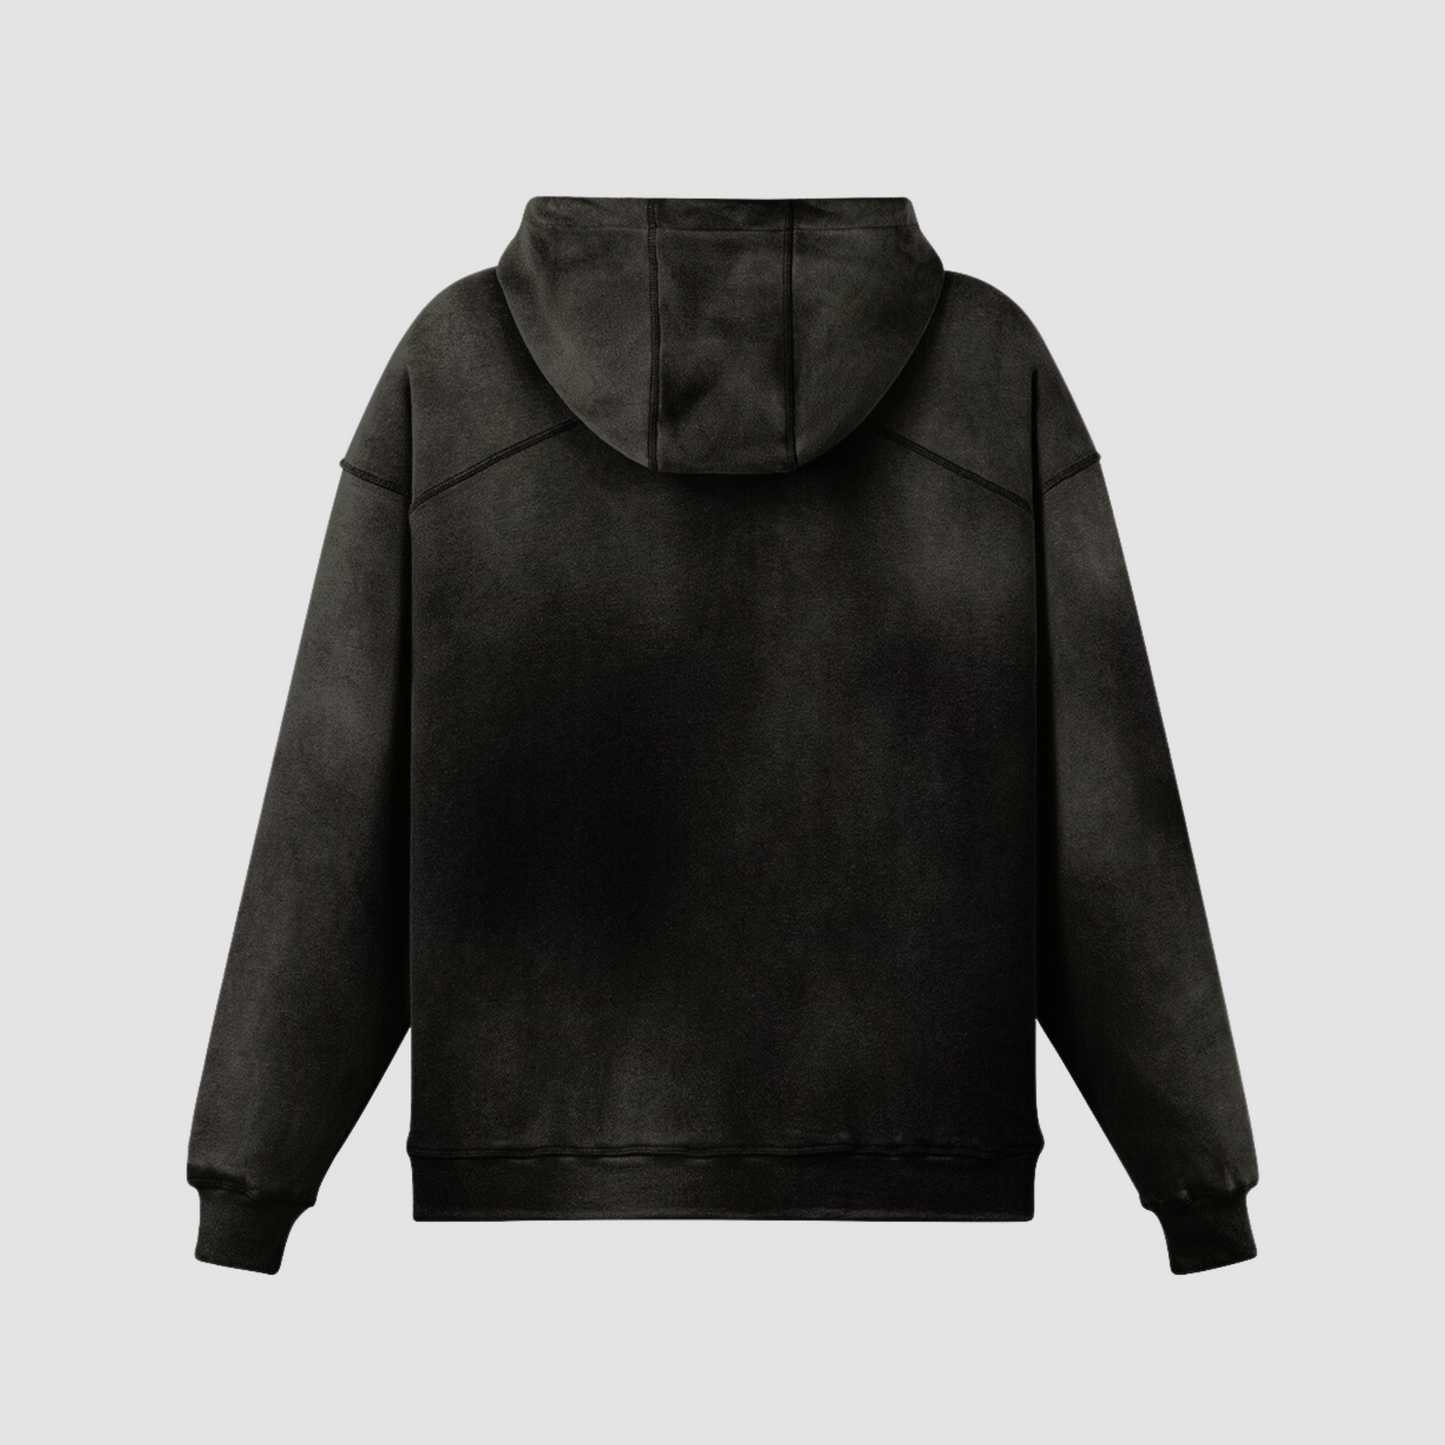 luxury streetwear washed black hoodie, back side